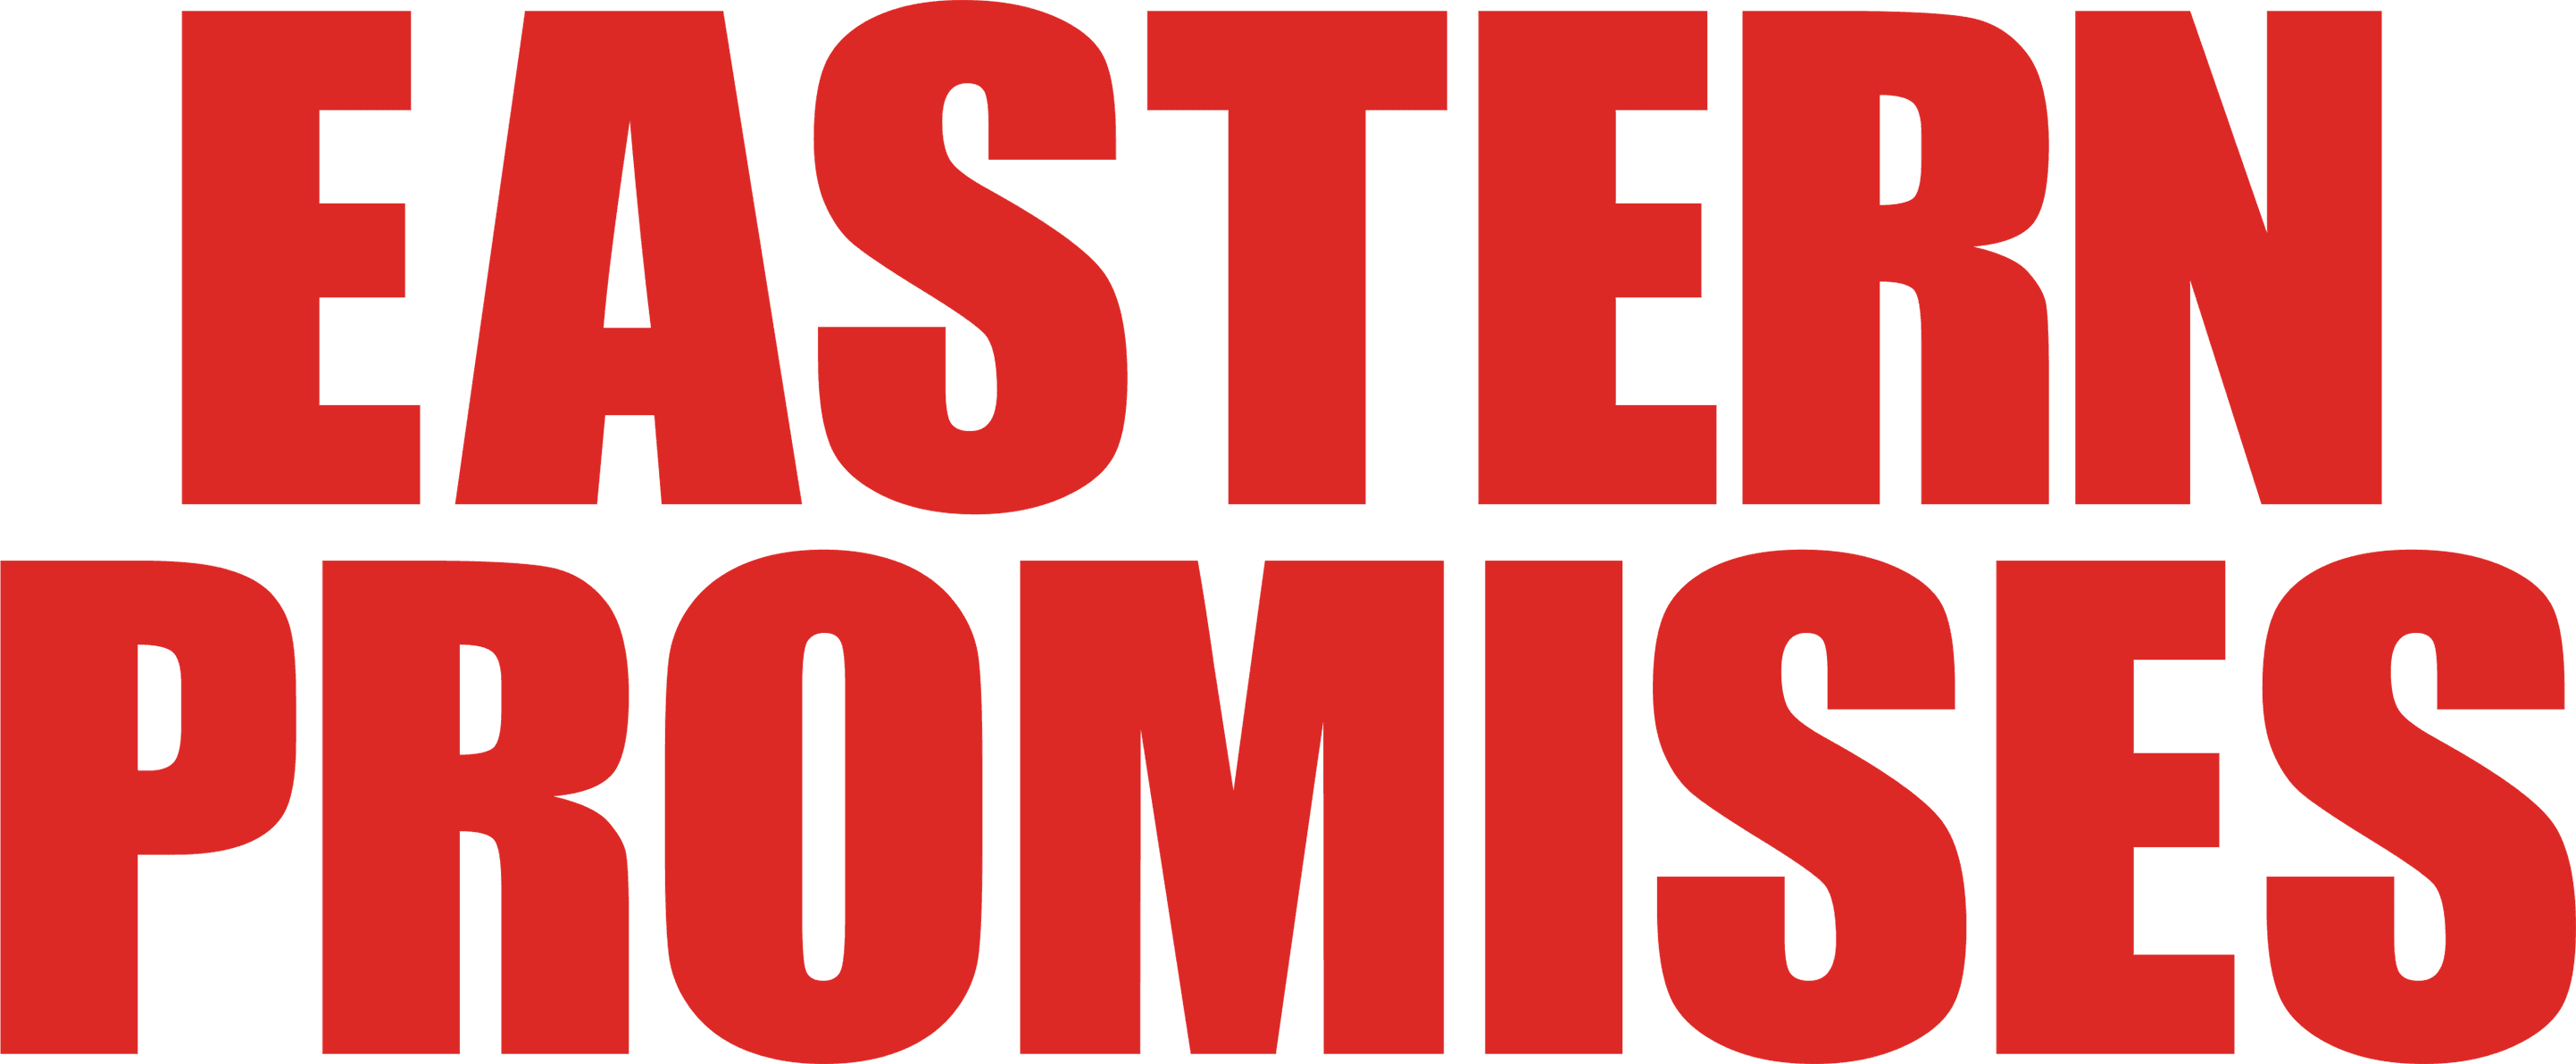 Eastern Promises logo